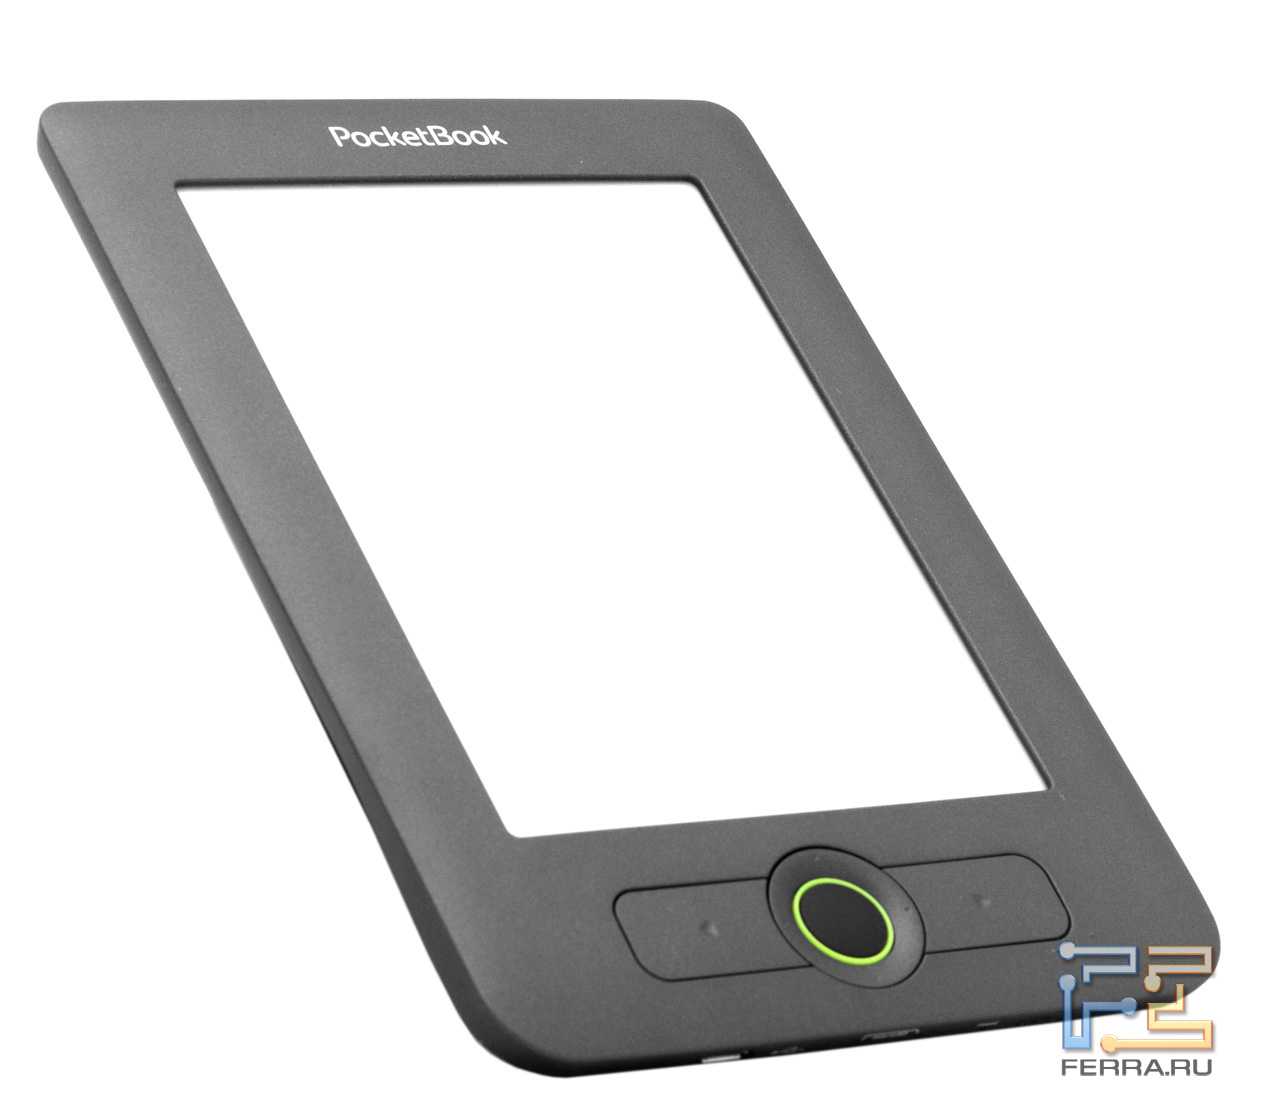 Электронный книга PocketBook Basic 611 - подробные характеристики обзоры видео фото Цены в интернет-магазинах где можно купить электронную книгу PocketBook Basic 611